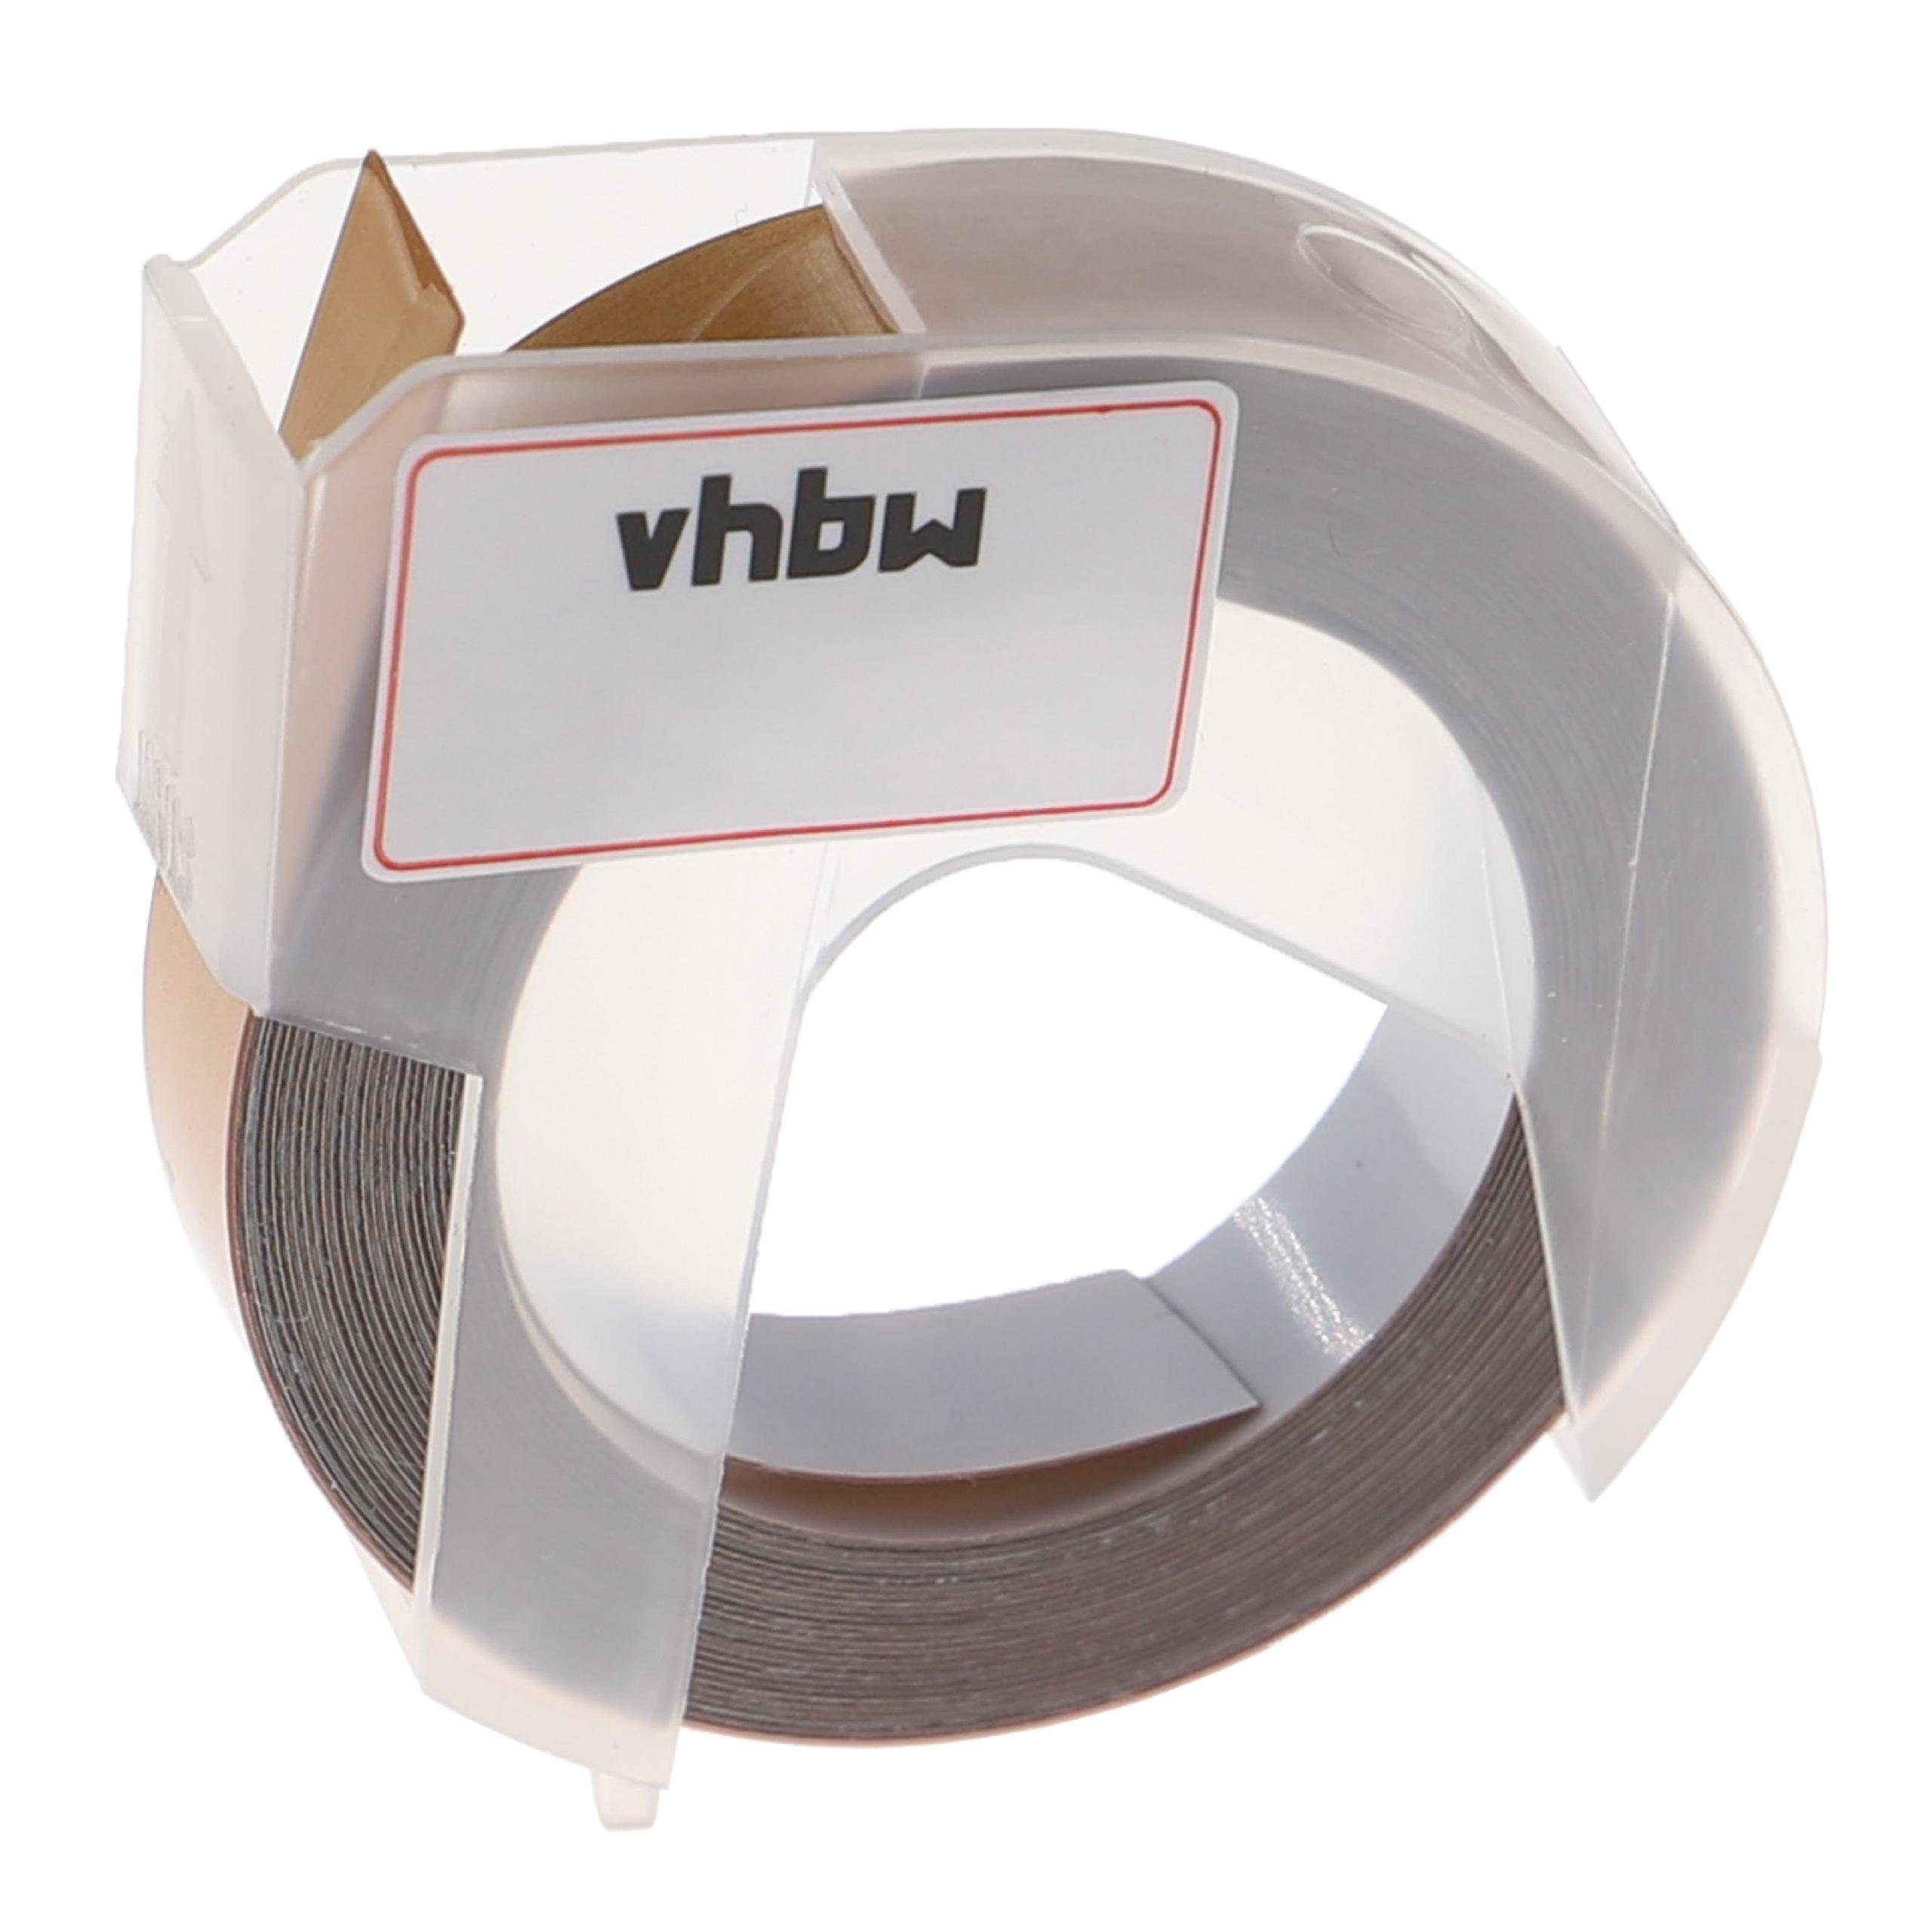 Drucker vhbw & Pro Organizer passend / Beschriftungsgerät für Beschriftungsband Dymo Xpress